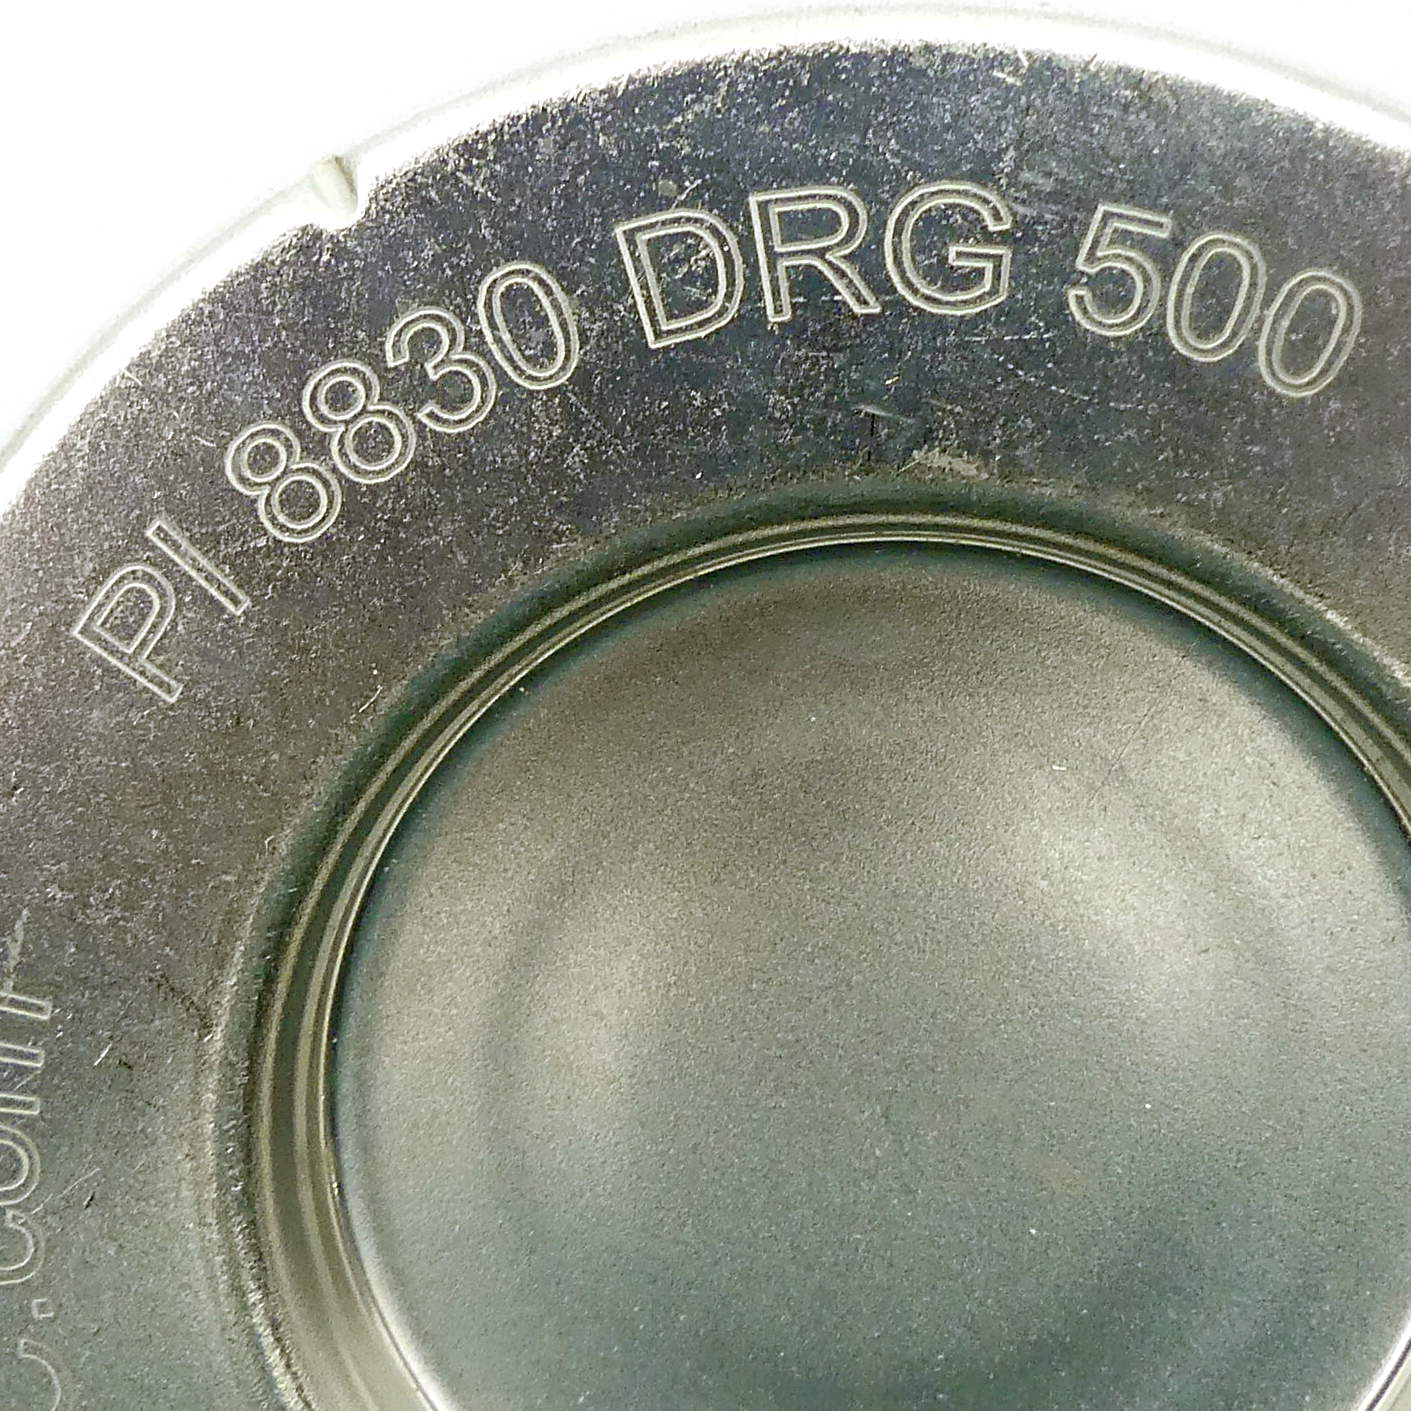 Filter insert PI 8830 DRG 500 